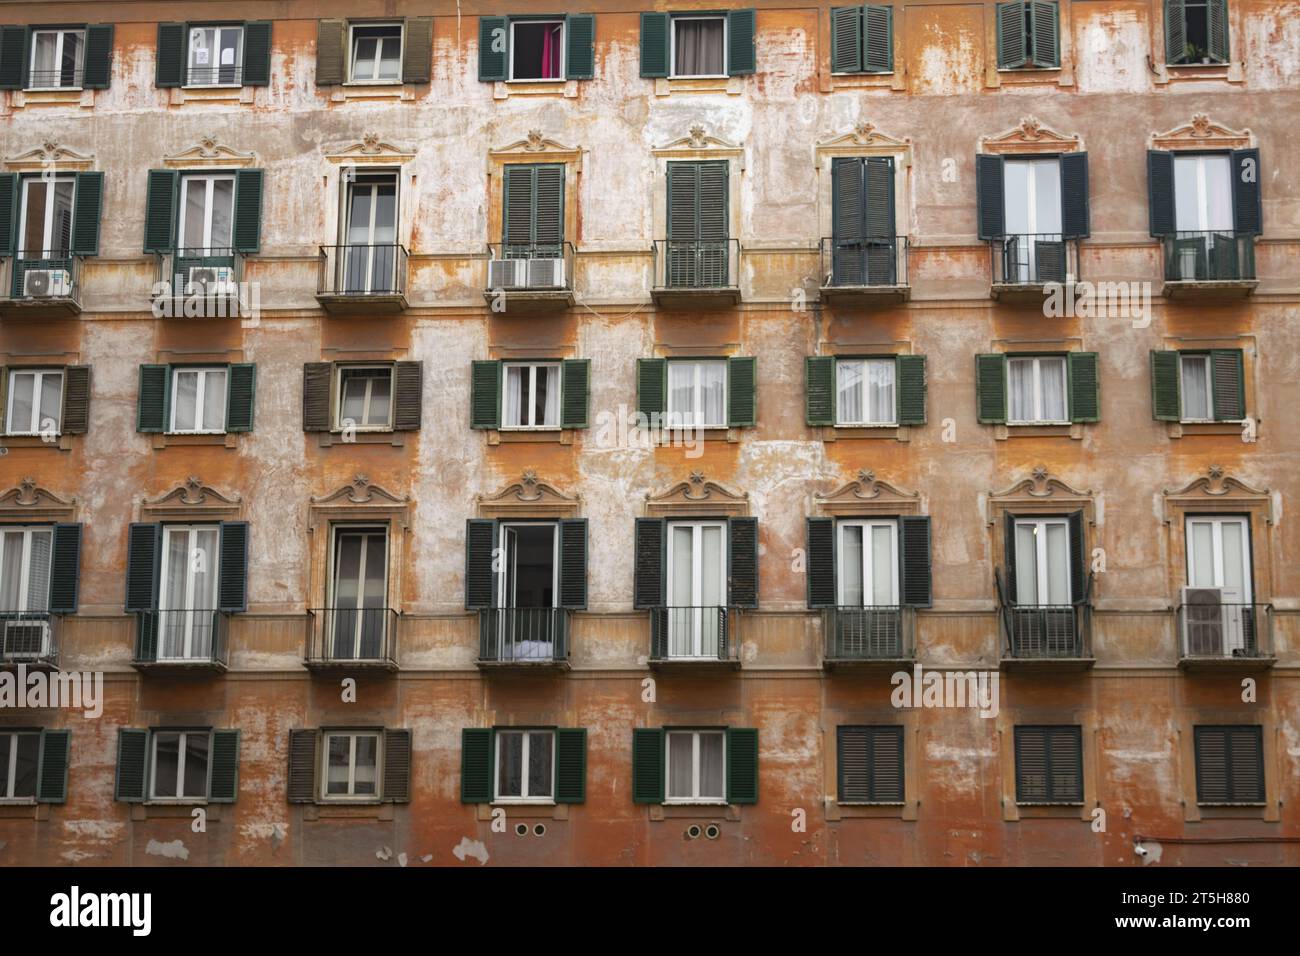 série de fenêtres colorées dans un bâtiment ancien avec des murs épluchés Banque D'Images